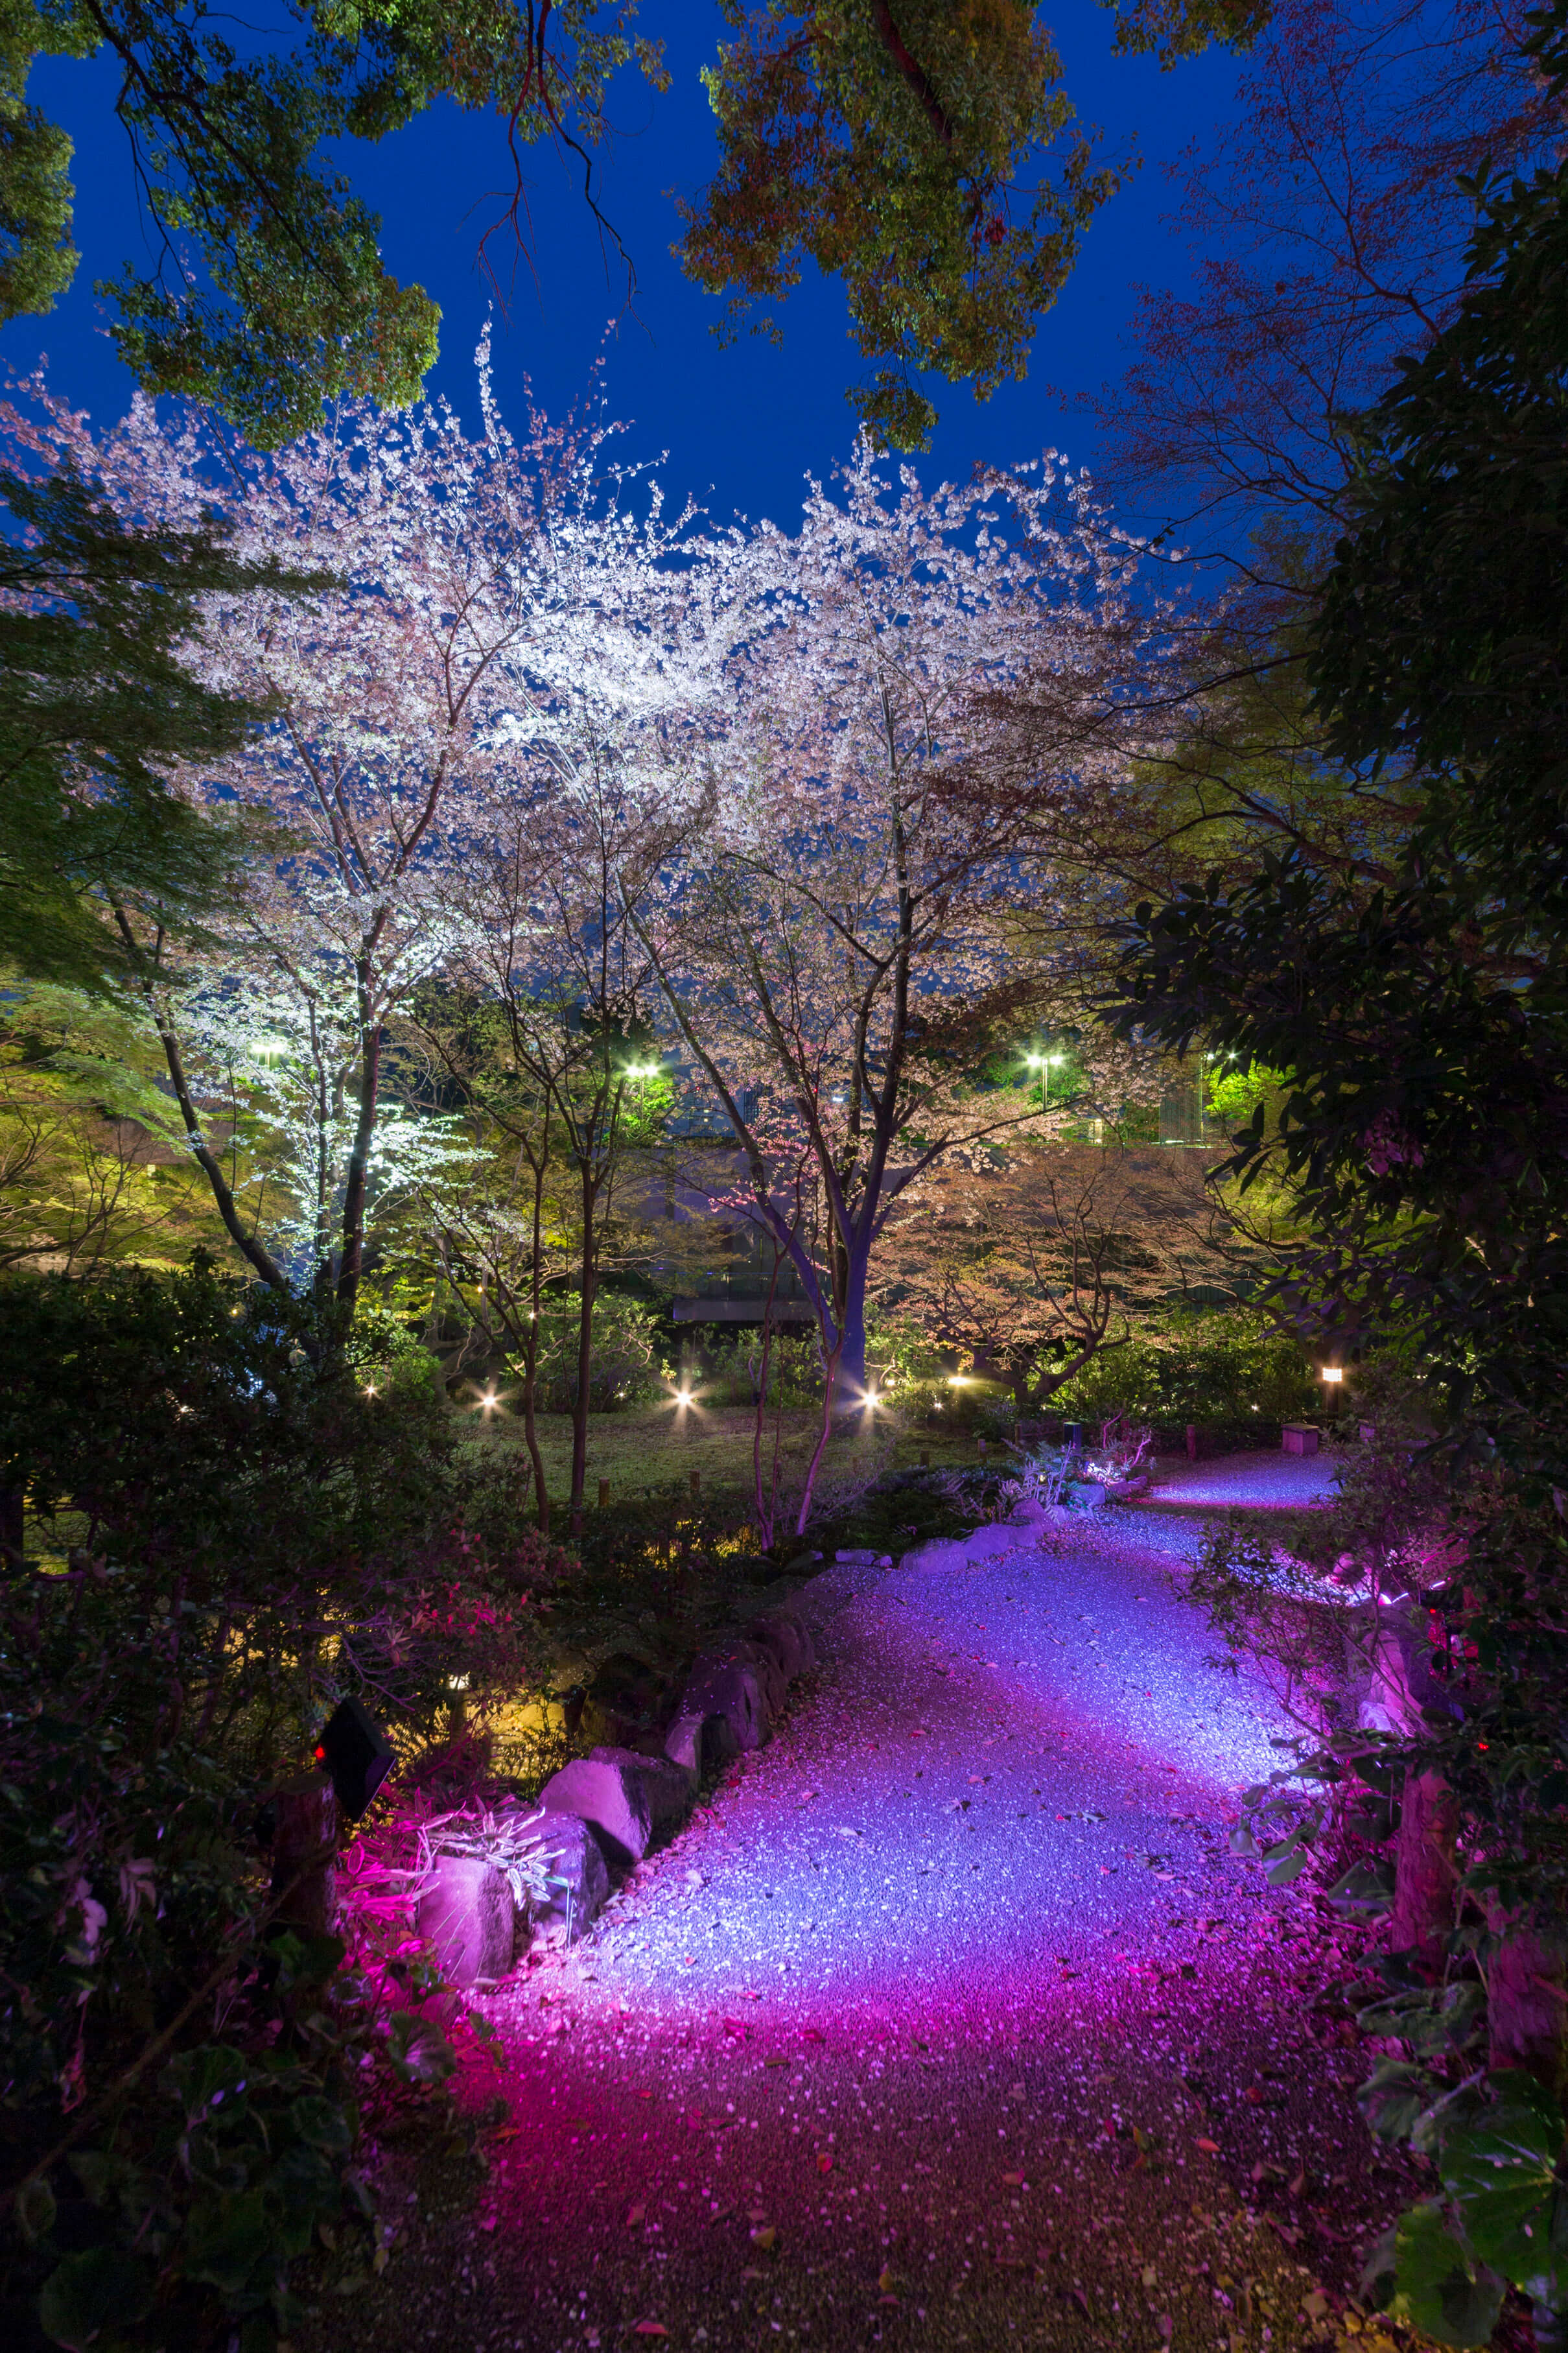 Gotenyama Cherry Blossom Festival 2018 to be Held at Gotenyama Trust City